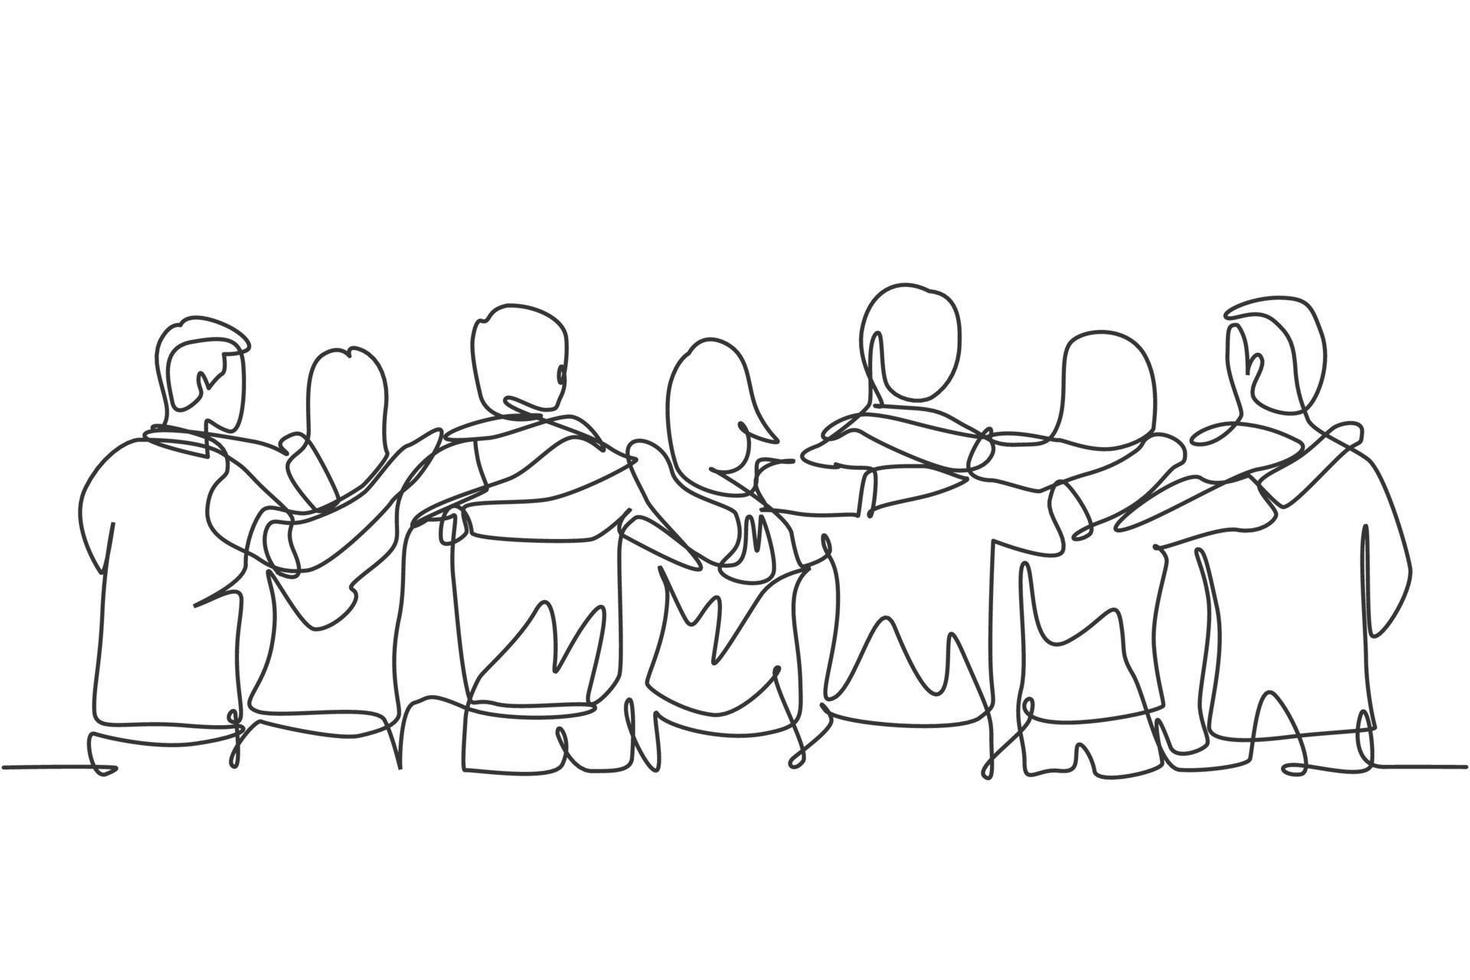 desenho de linha contínua única sobre um grupo de homens e mulheres de várias etnias que estão juntos para mostrar seus laços de amizade. unidade na diversidade conceito uma linha desenhar ilustração vetorial vetor